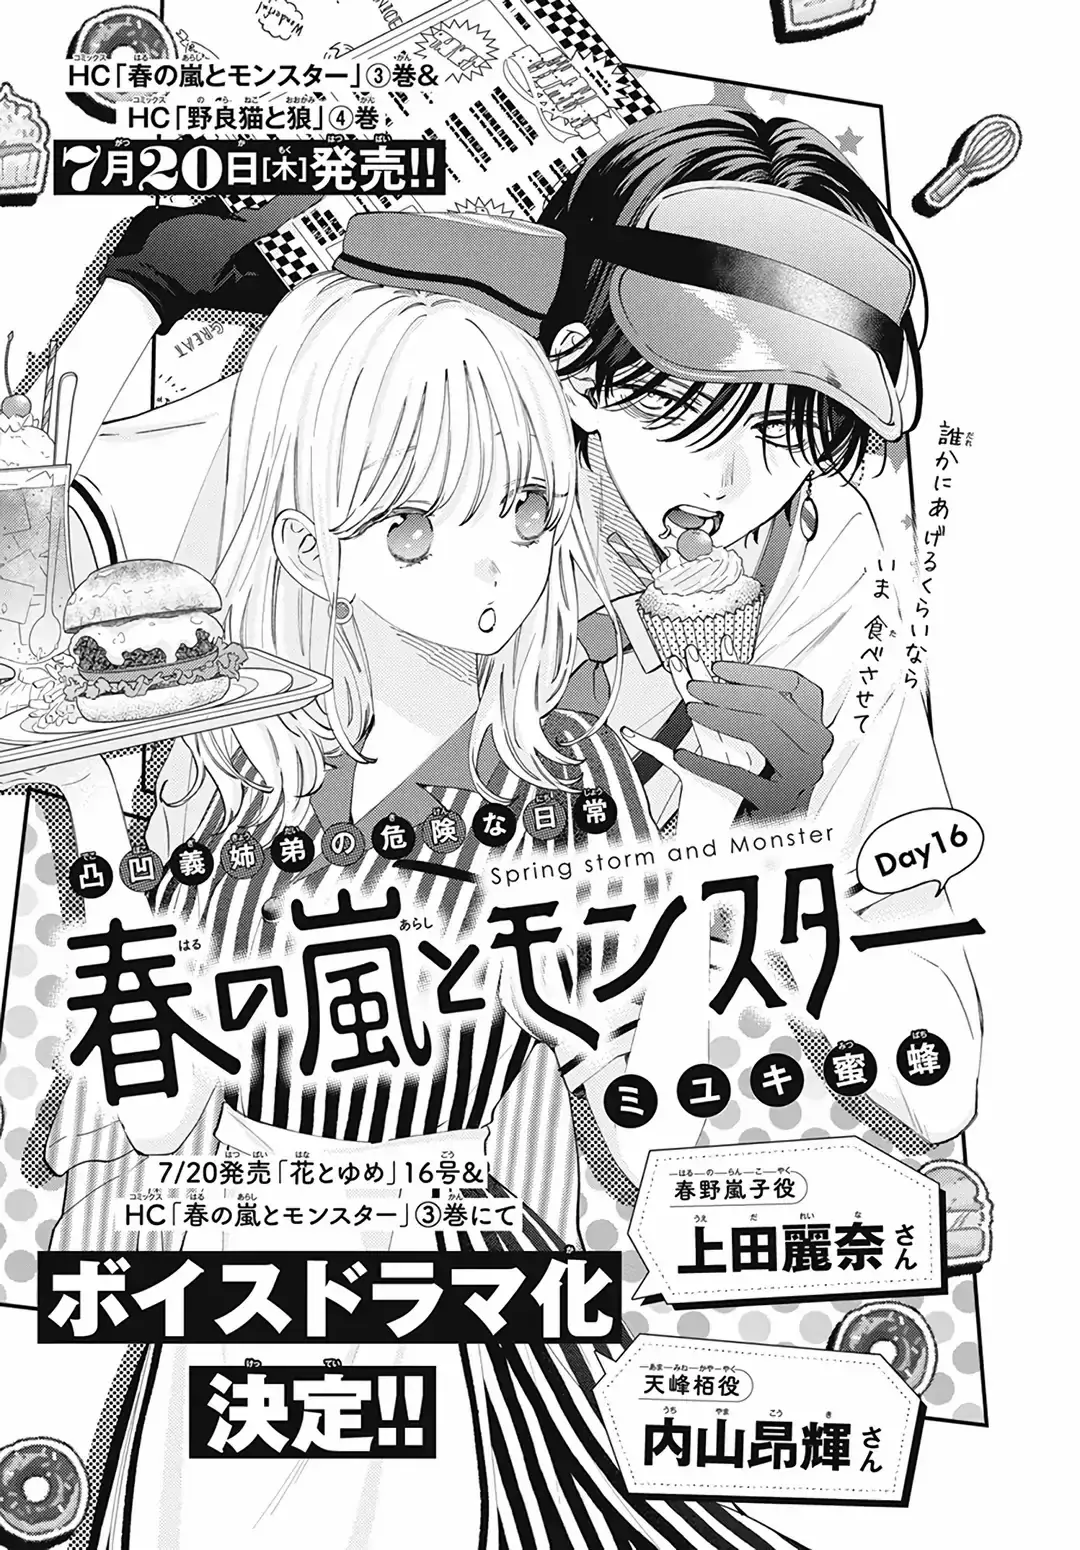 Haru No Arashi To Monster - 16 page 3-36dc743f